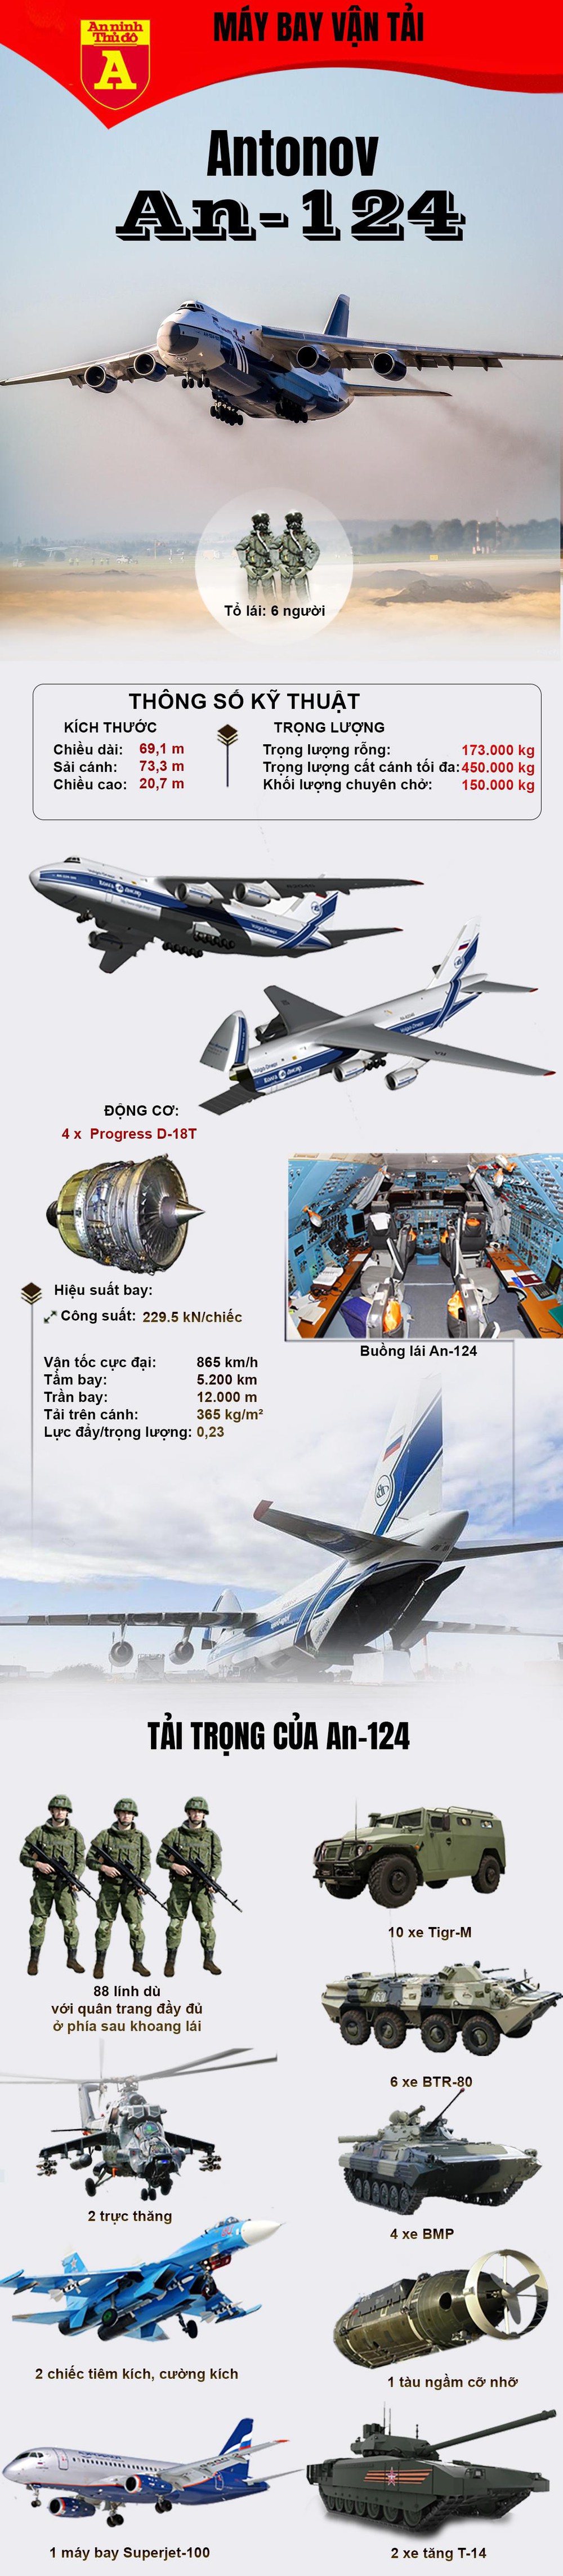 Khả năng vận tải siêu khủng của Vận tải cơ khổng lồ An-124 của Nga - Ảnh 1